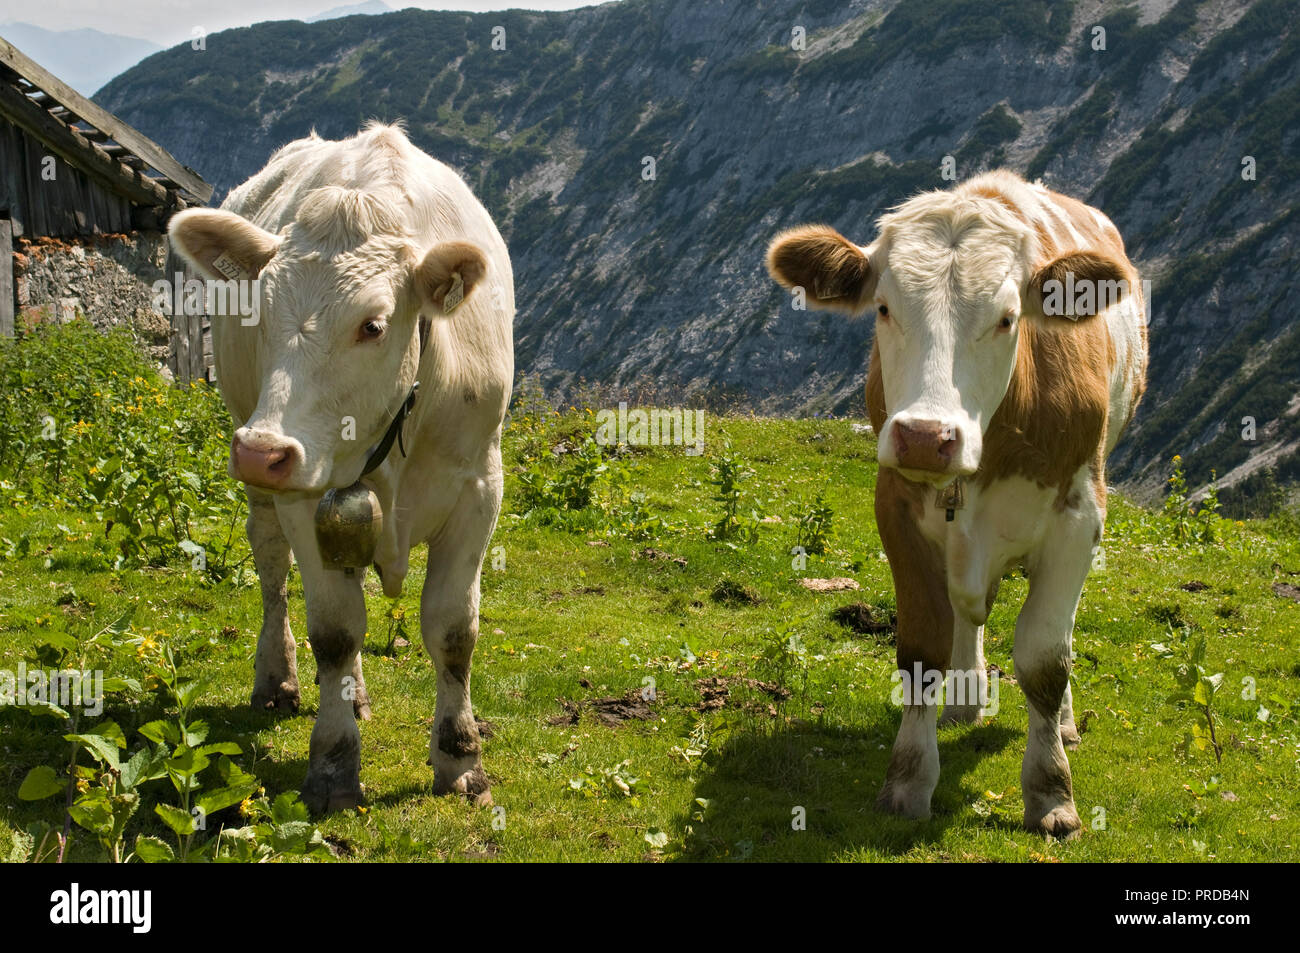 Les vaches sur l'alpage, Nauders-Alm, Karwendel, Tyrol, Autriche Banque D'Images